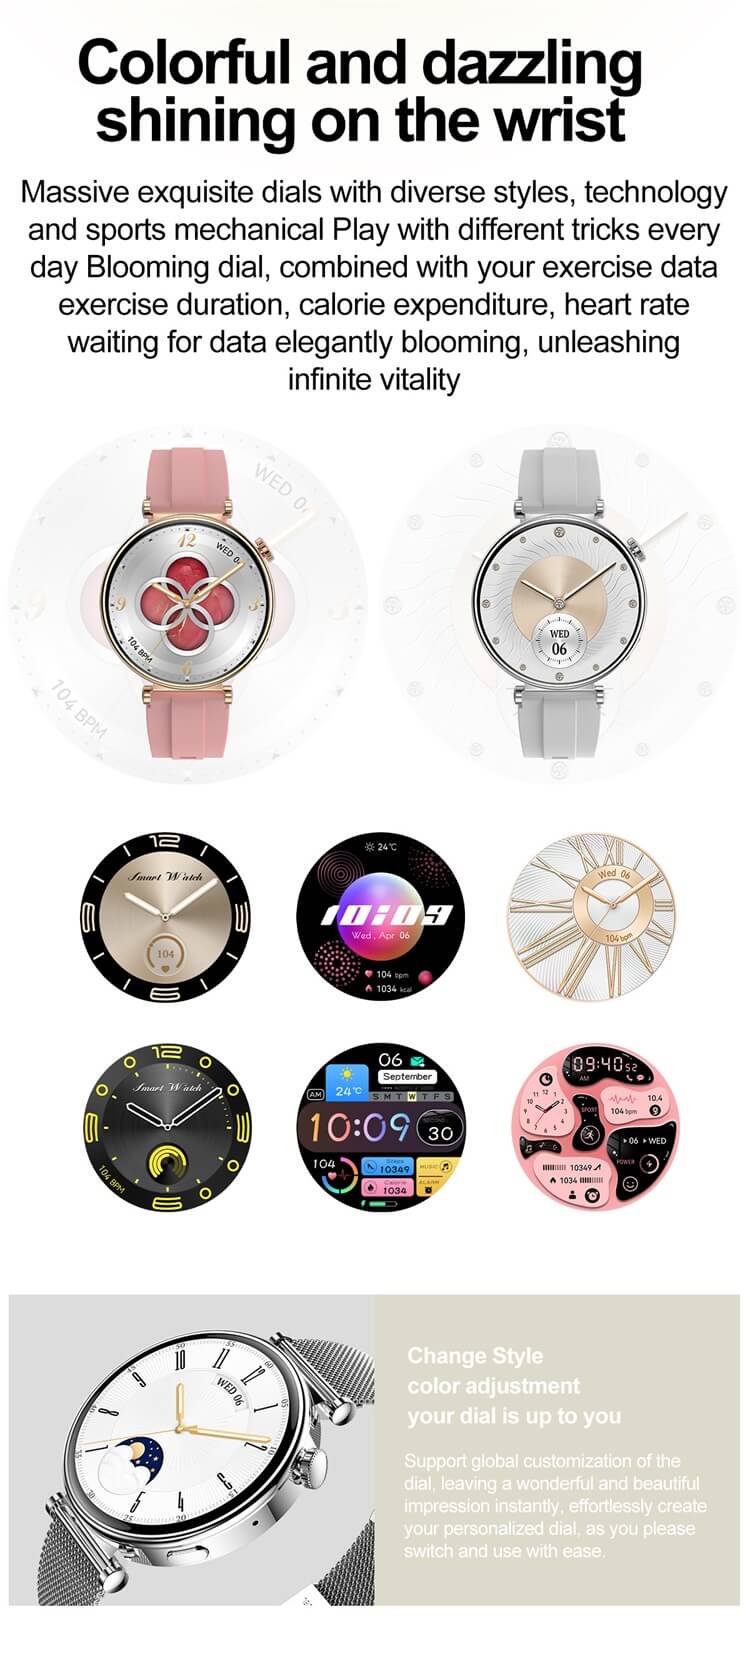 VL41 PRO Smartwatch, modisches, leichtes Design, hochauflösender Farbbildschirm, IP68 wasserdicht – Shenzhen Shengye Technology Co., Ltd